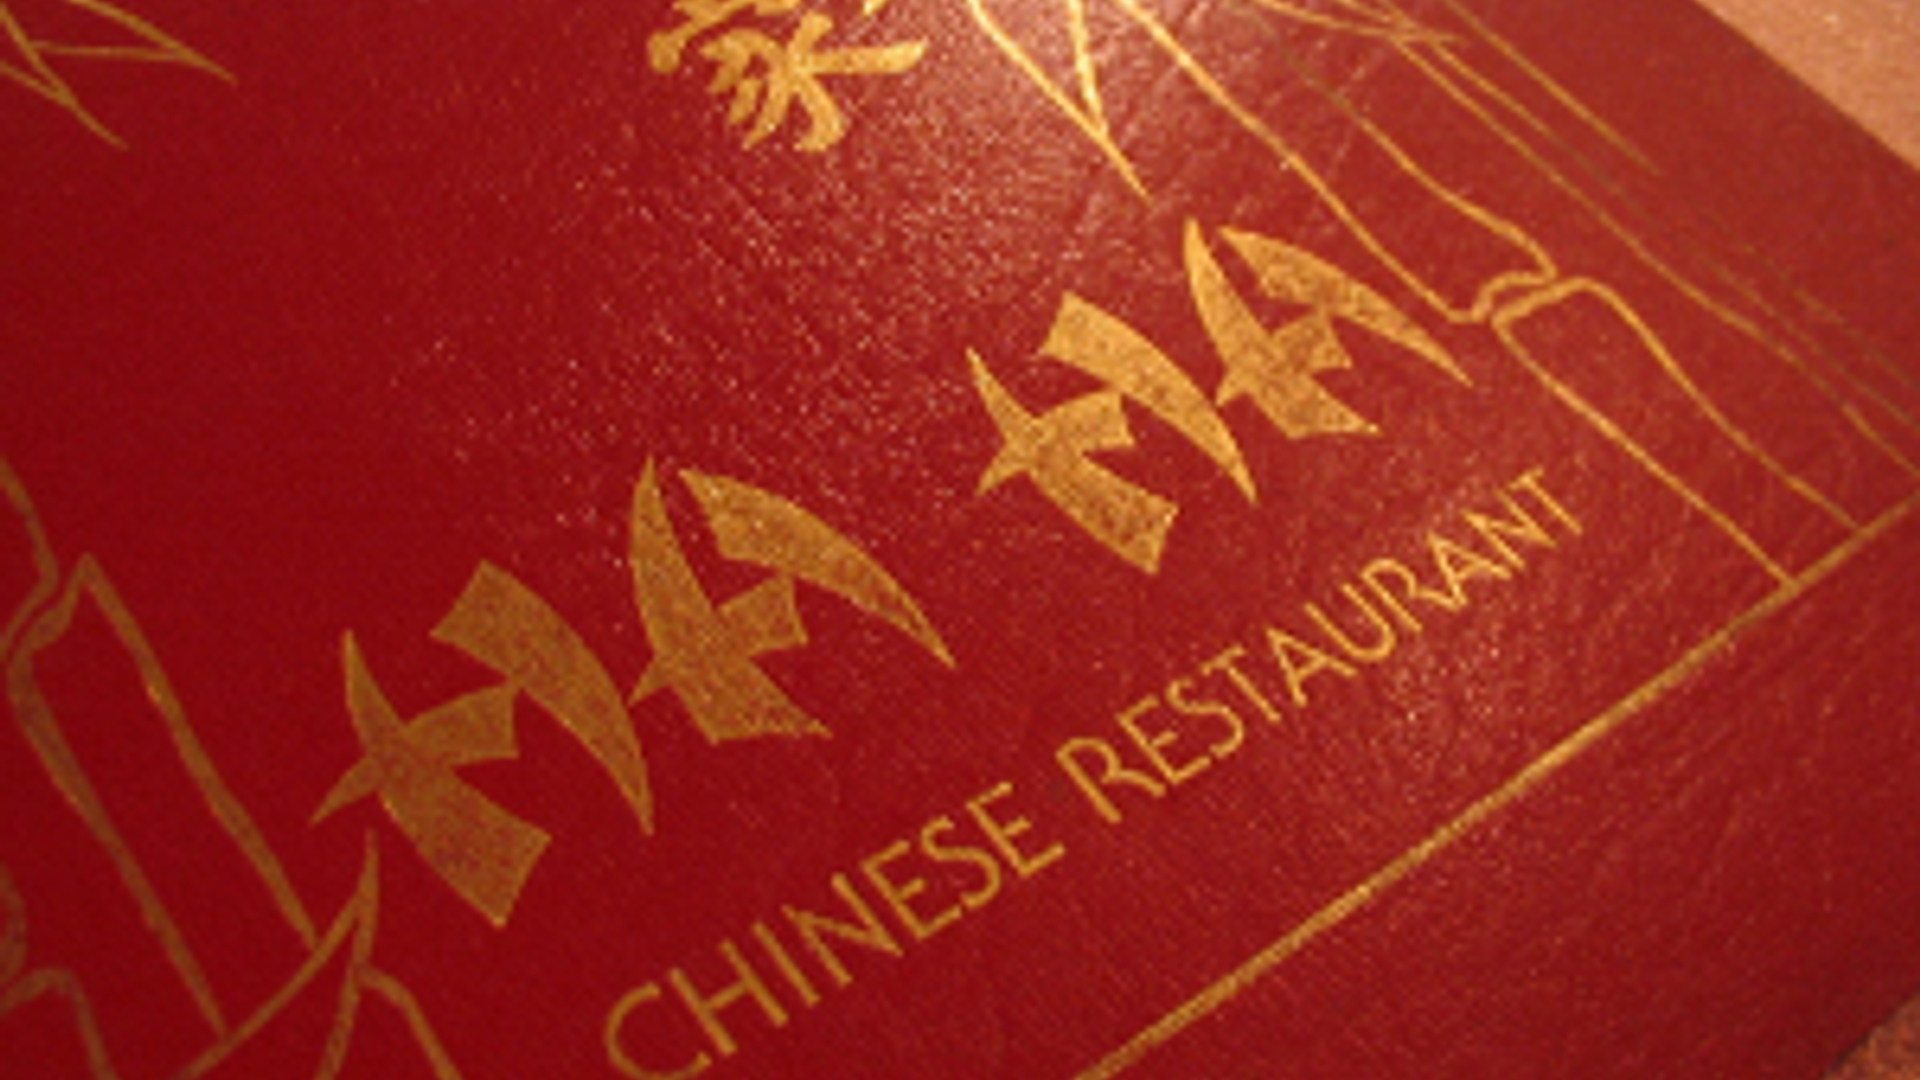 Flickr_Chineesrestaurant_TheRocketeer_300.jpg